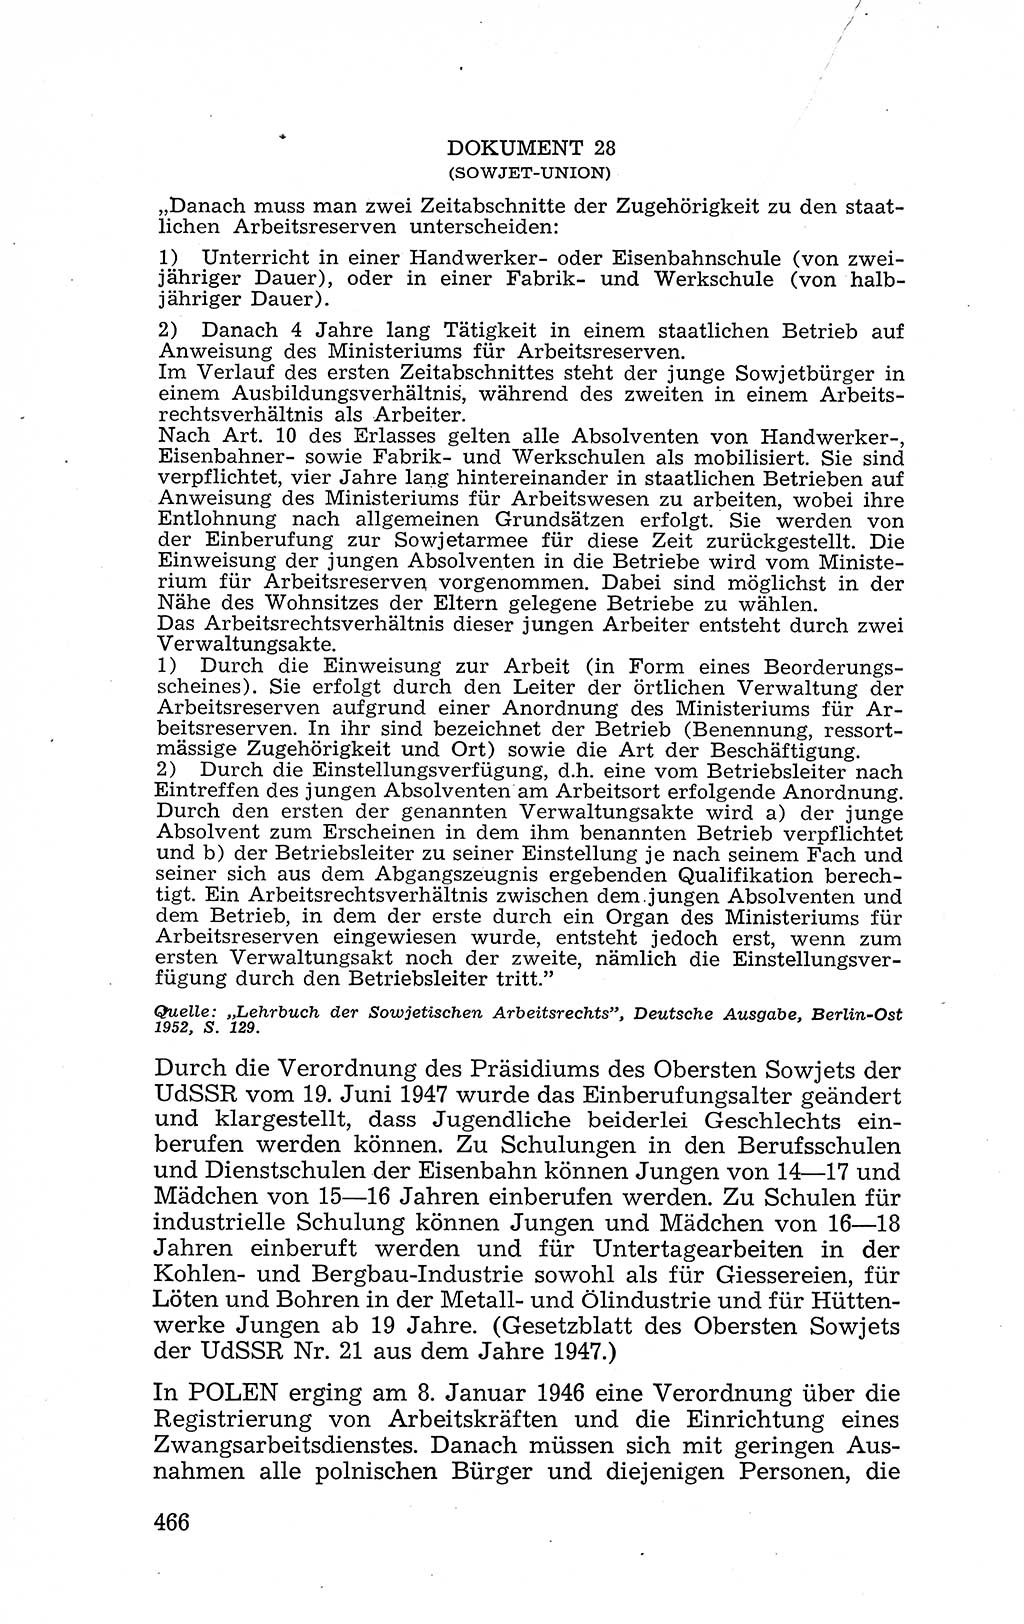 Recht in Fesseln, Dokumente, Internationale Juristen-Kommission [Bundesrepublik Deutschland (BRD)] 1955, Seite 466 (R. Dok. IJK BRD 1955, S. 466)